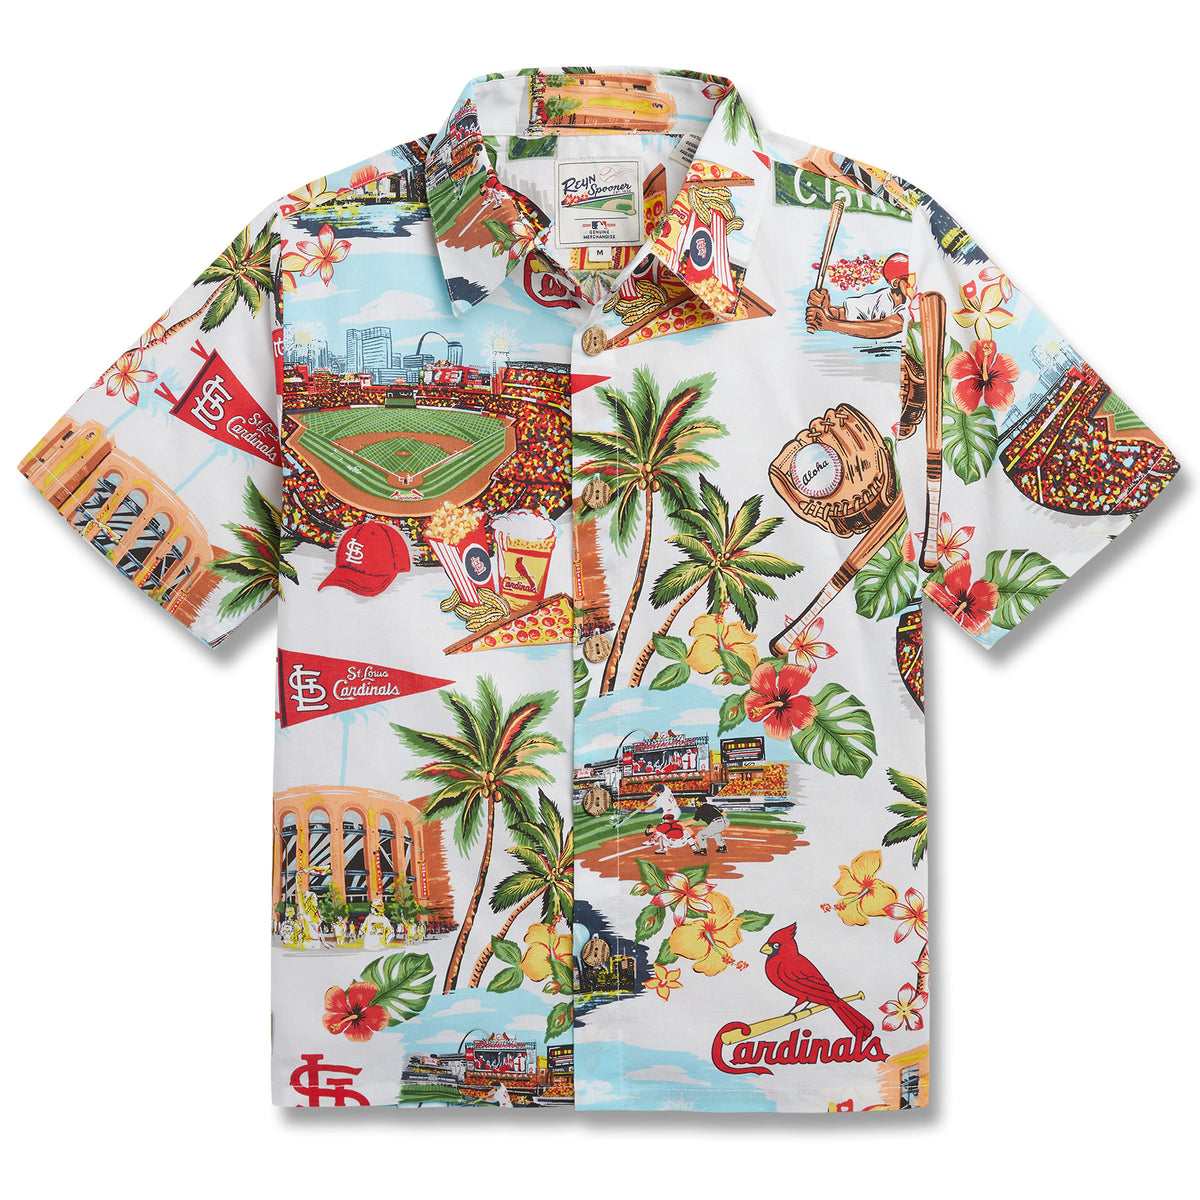 St Louis Cardinals Hawaiian Shirt Logo History St Louis Cardinals